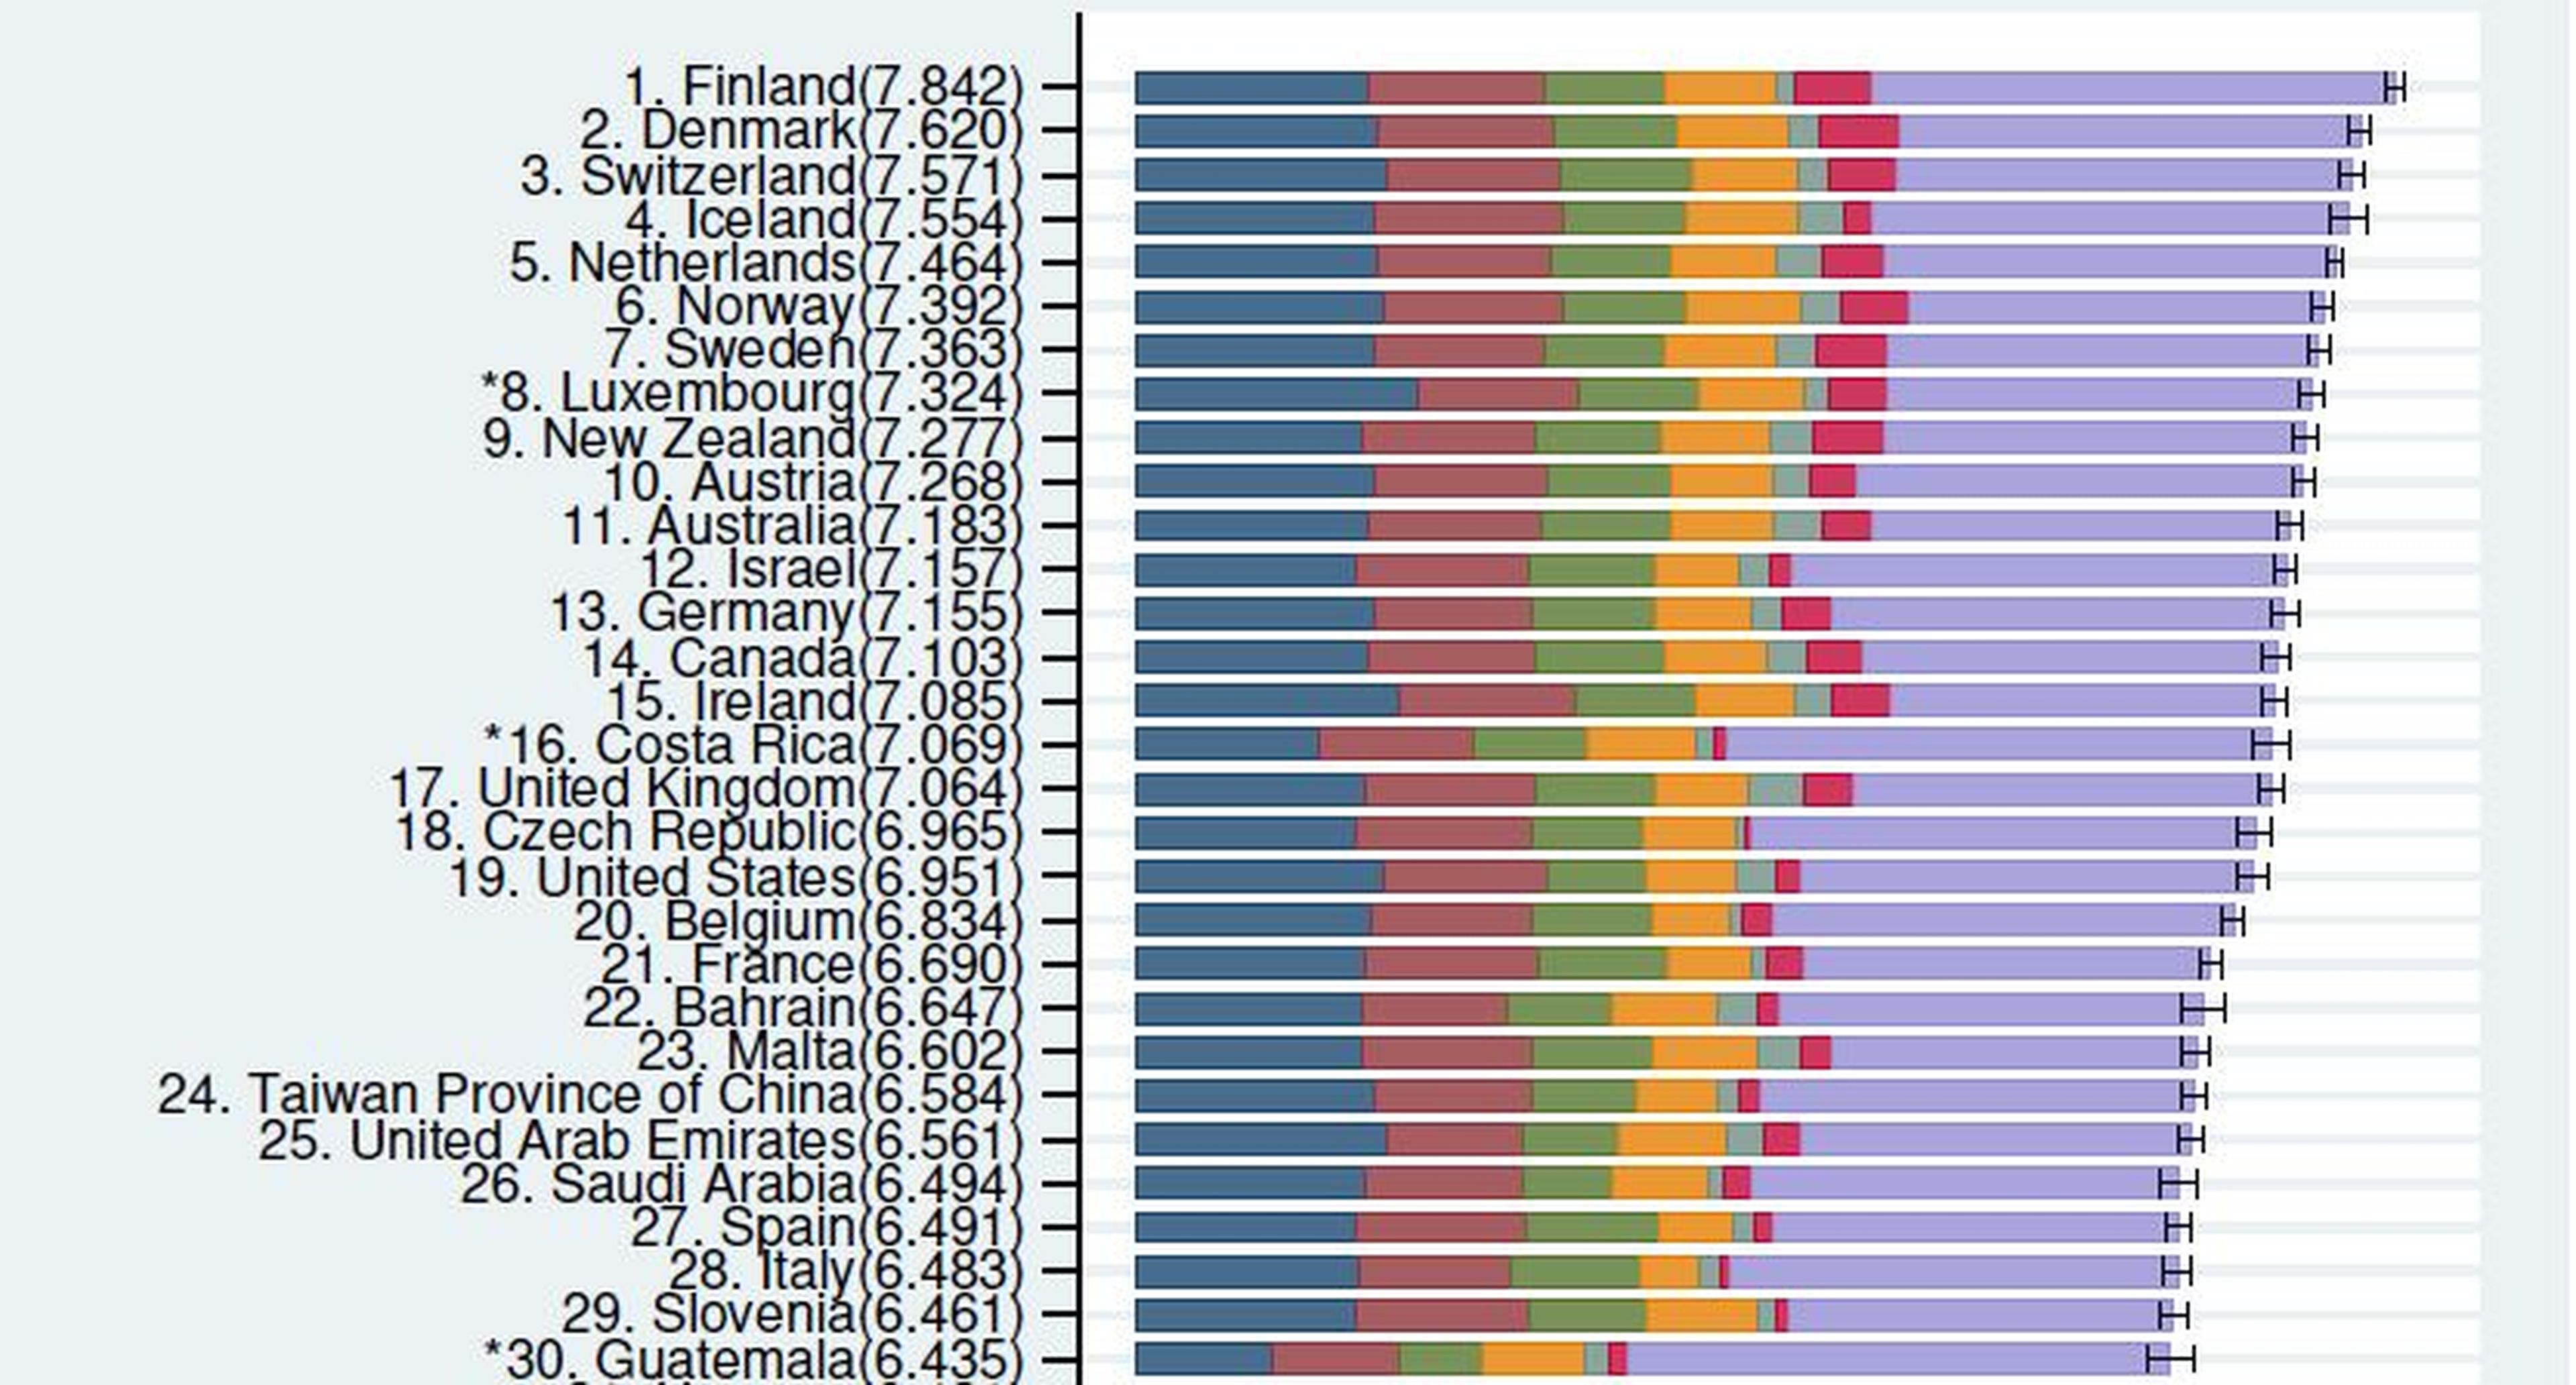 Finlandia y Dinamarca encabezan el ranking de países más felices del mundo, mientras que España se sitúa en el puesto número 27.